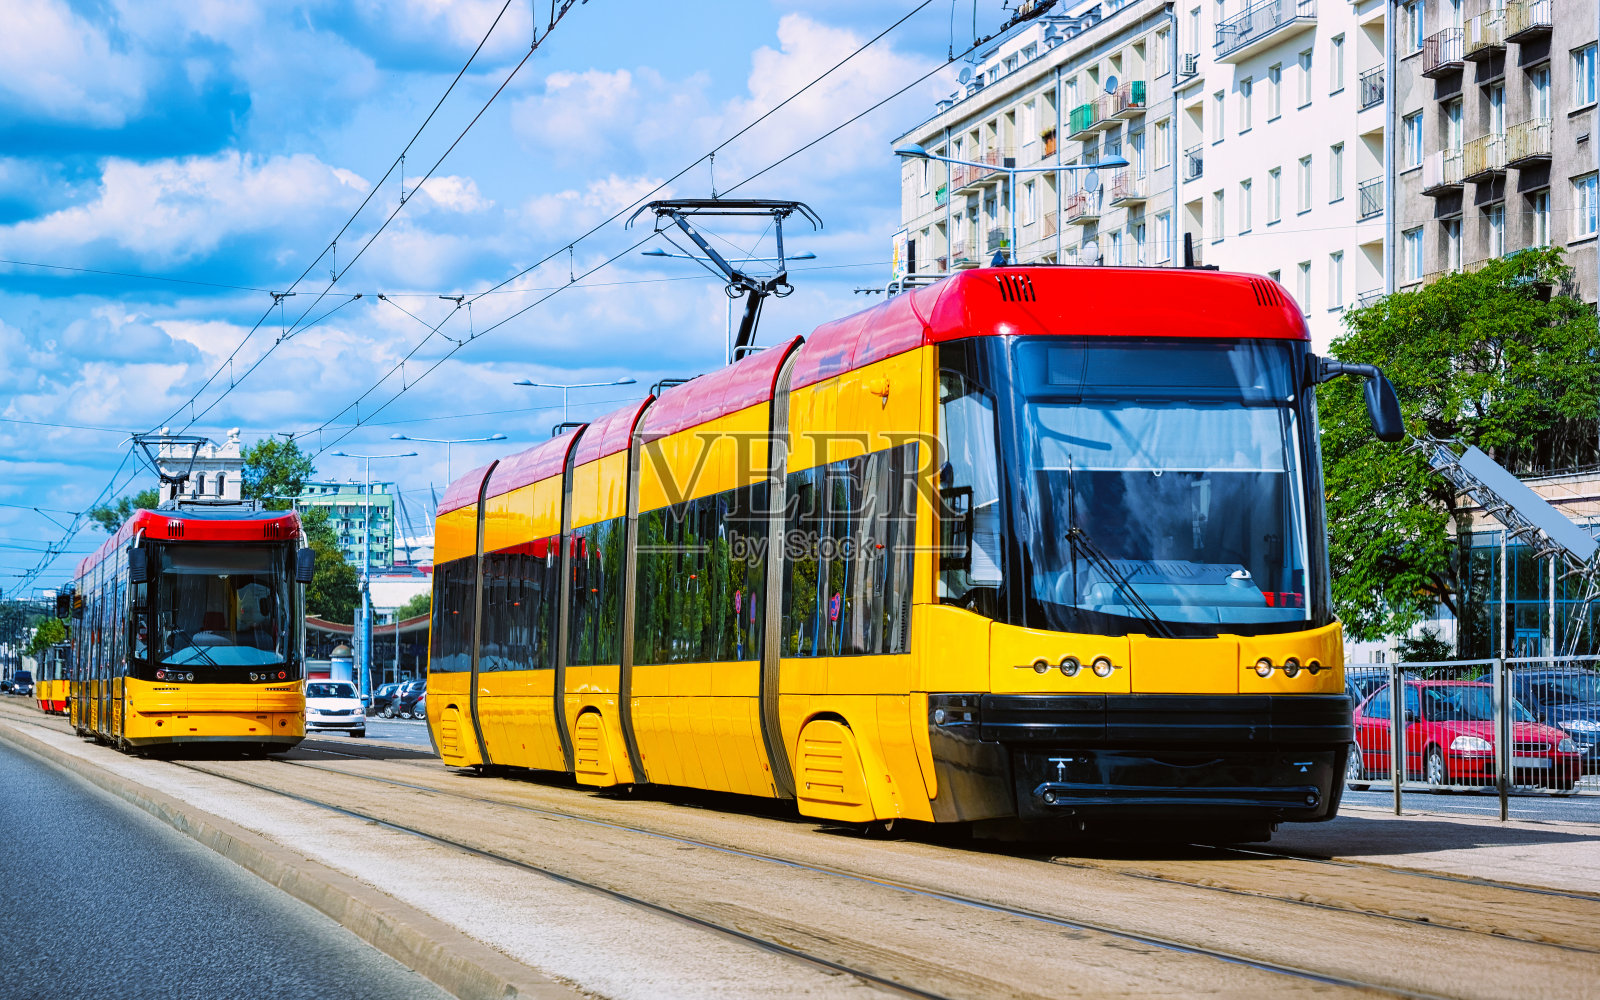 华沙市中心路上的有轨电车照片摄影图片